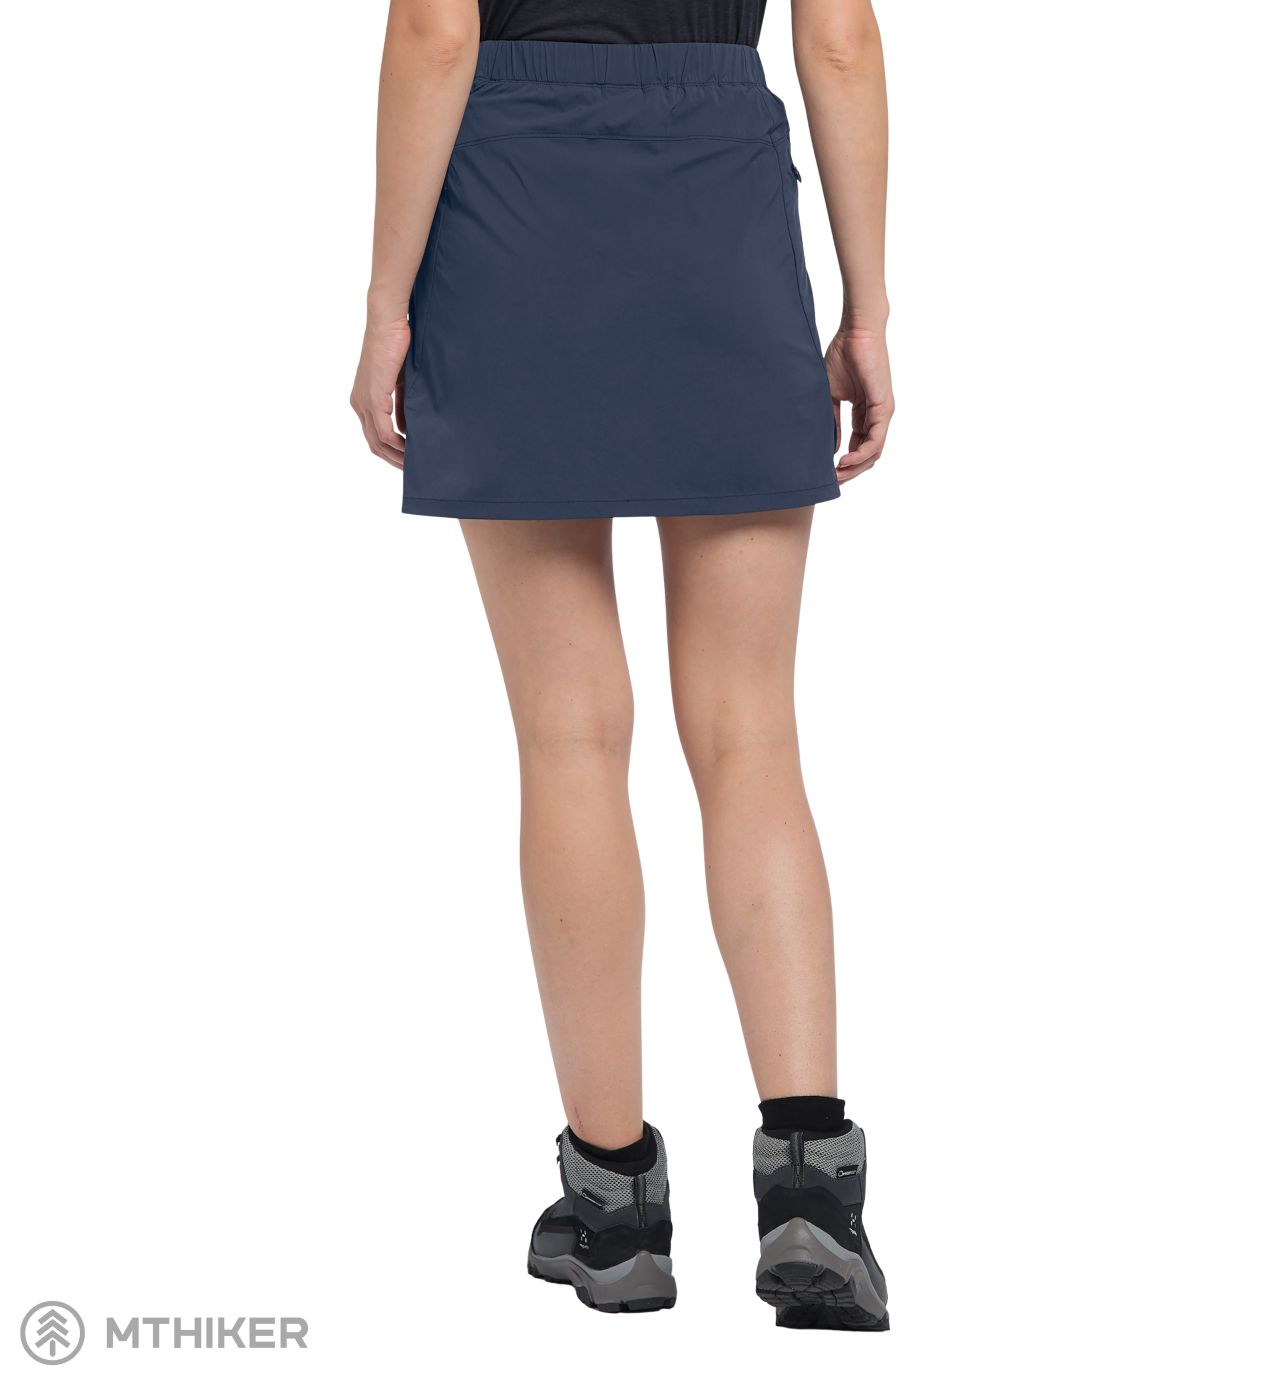 Haglöfs blue Skort dark skirt, Lite